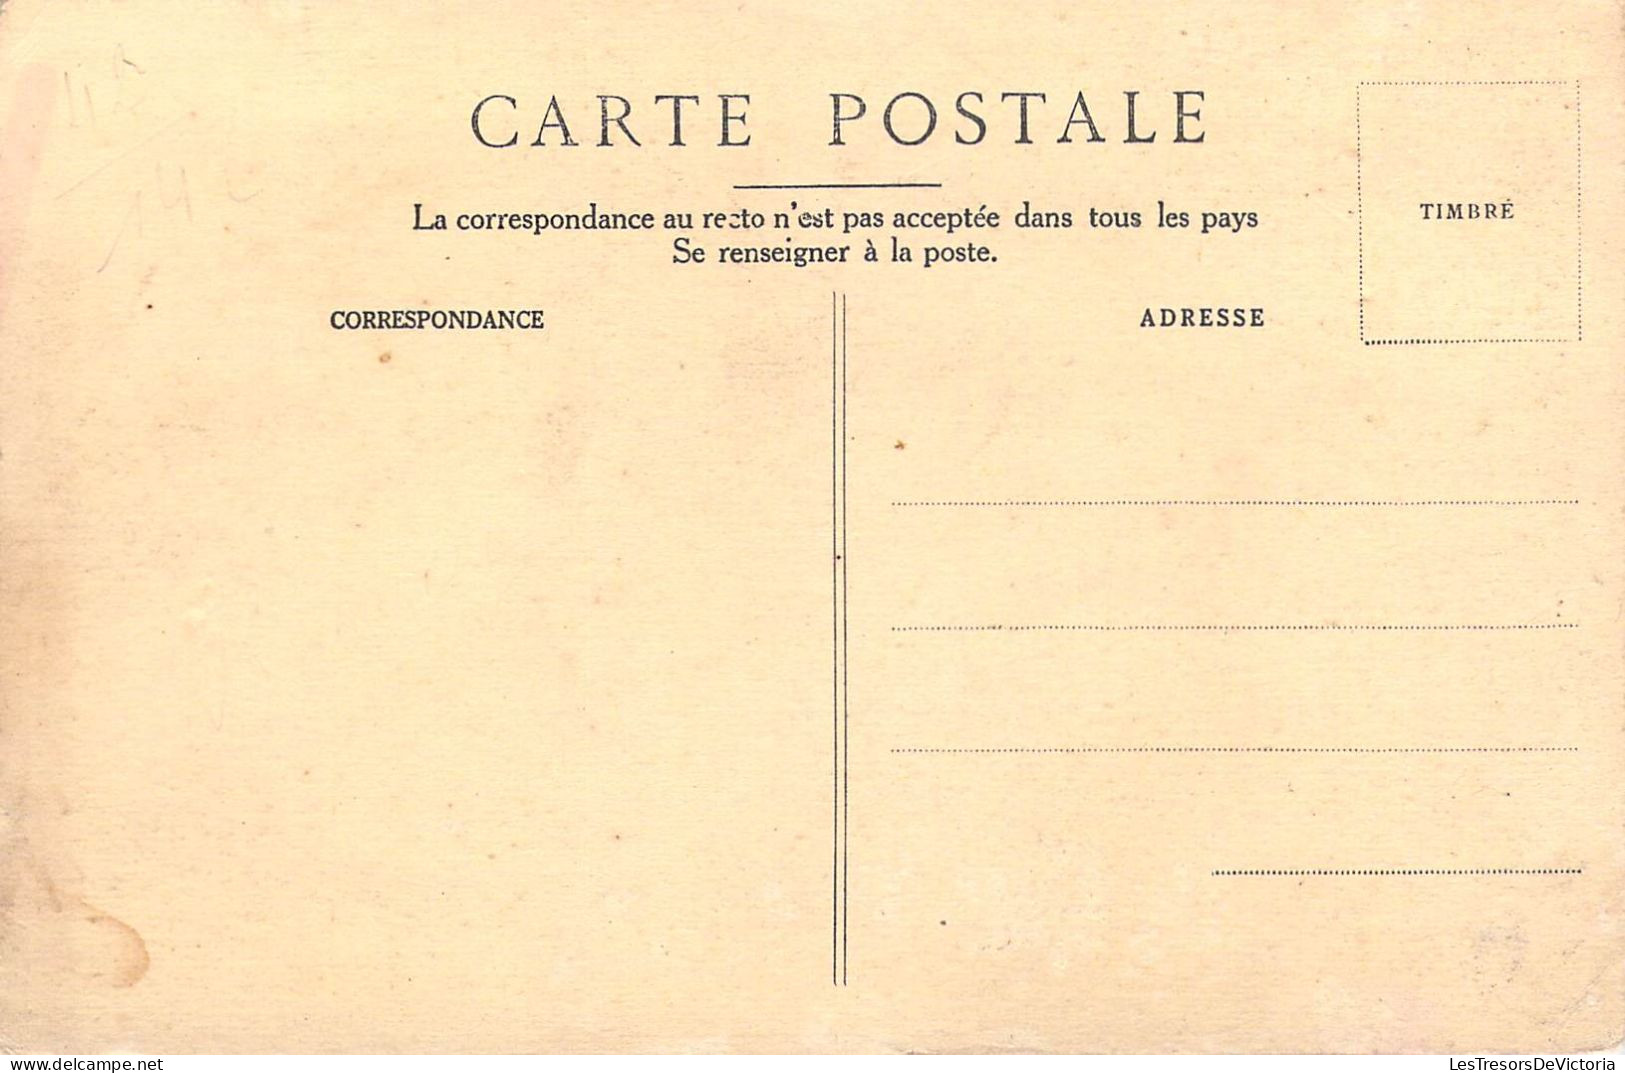 PUBLICITE - Cardons - L'Engrais Complet Intensif - N° 5bis De St-Gobain - Carte Postale Ancienne - Publicité